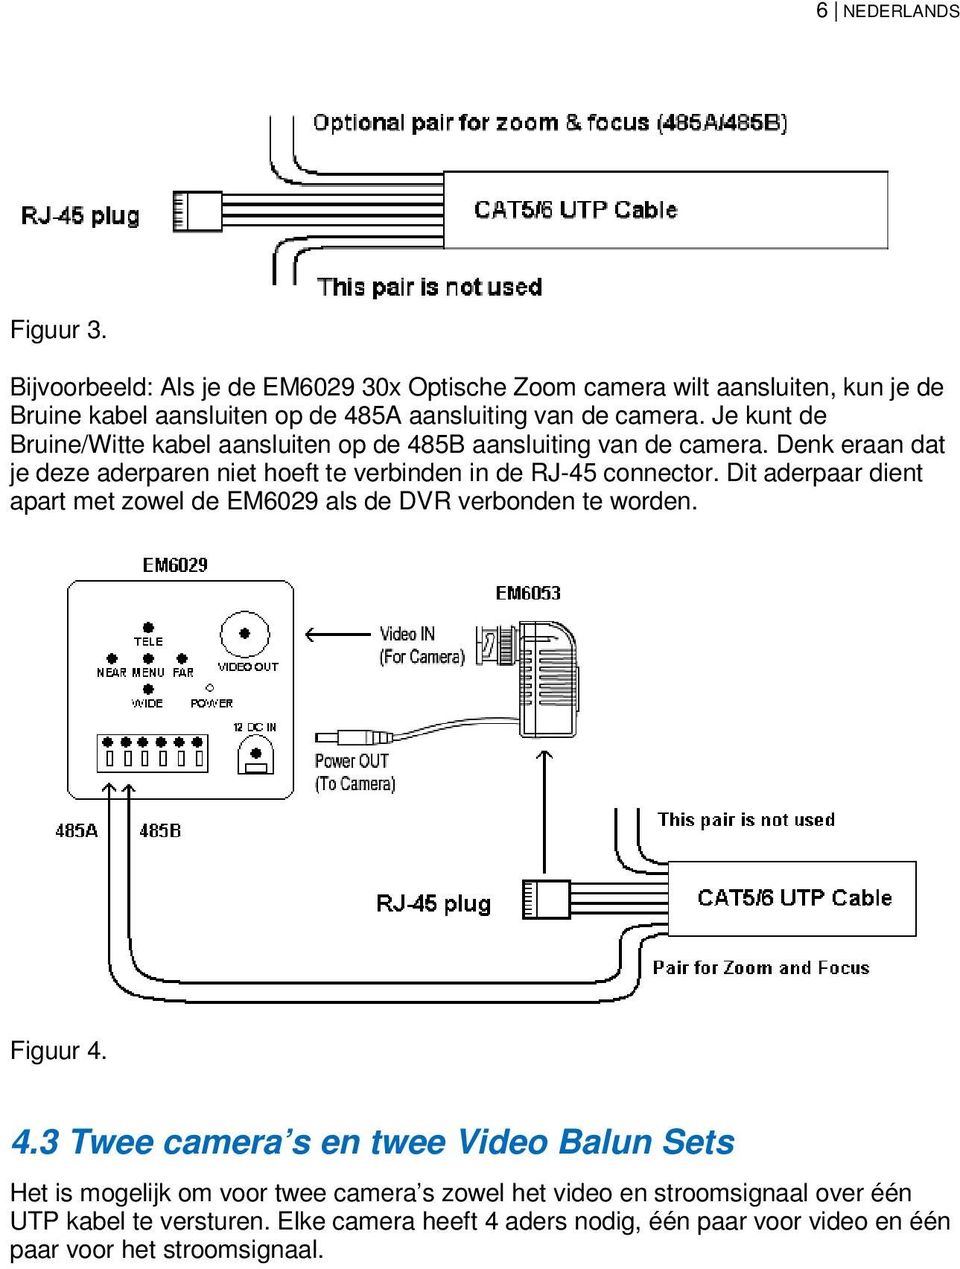 Je kunt de Bruine/Witte kabel aansluiten op de 485B aansluiting van de camera. Denk eraan dat je deze aderparen niet hoeft te verbinden in de RJ-45 connector.